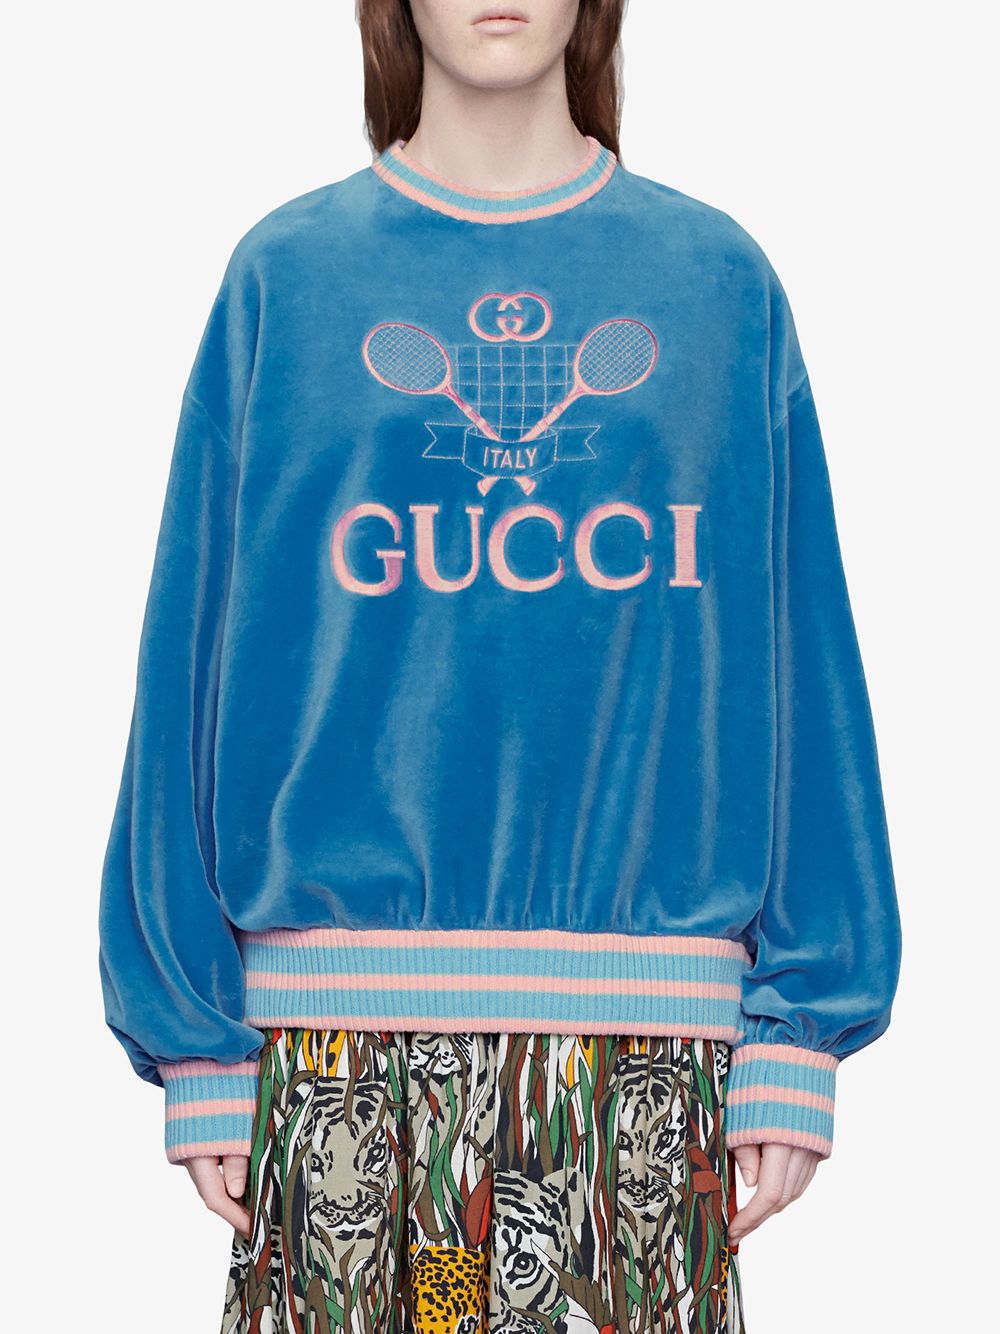 Gucci Sweatshirt With Gucci Tennis - Farfetch